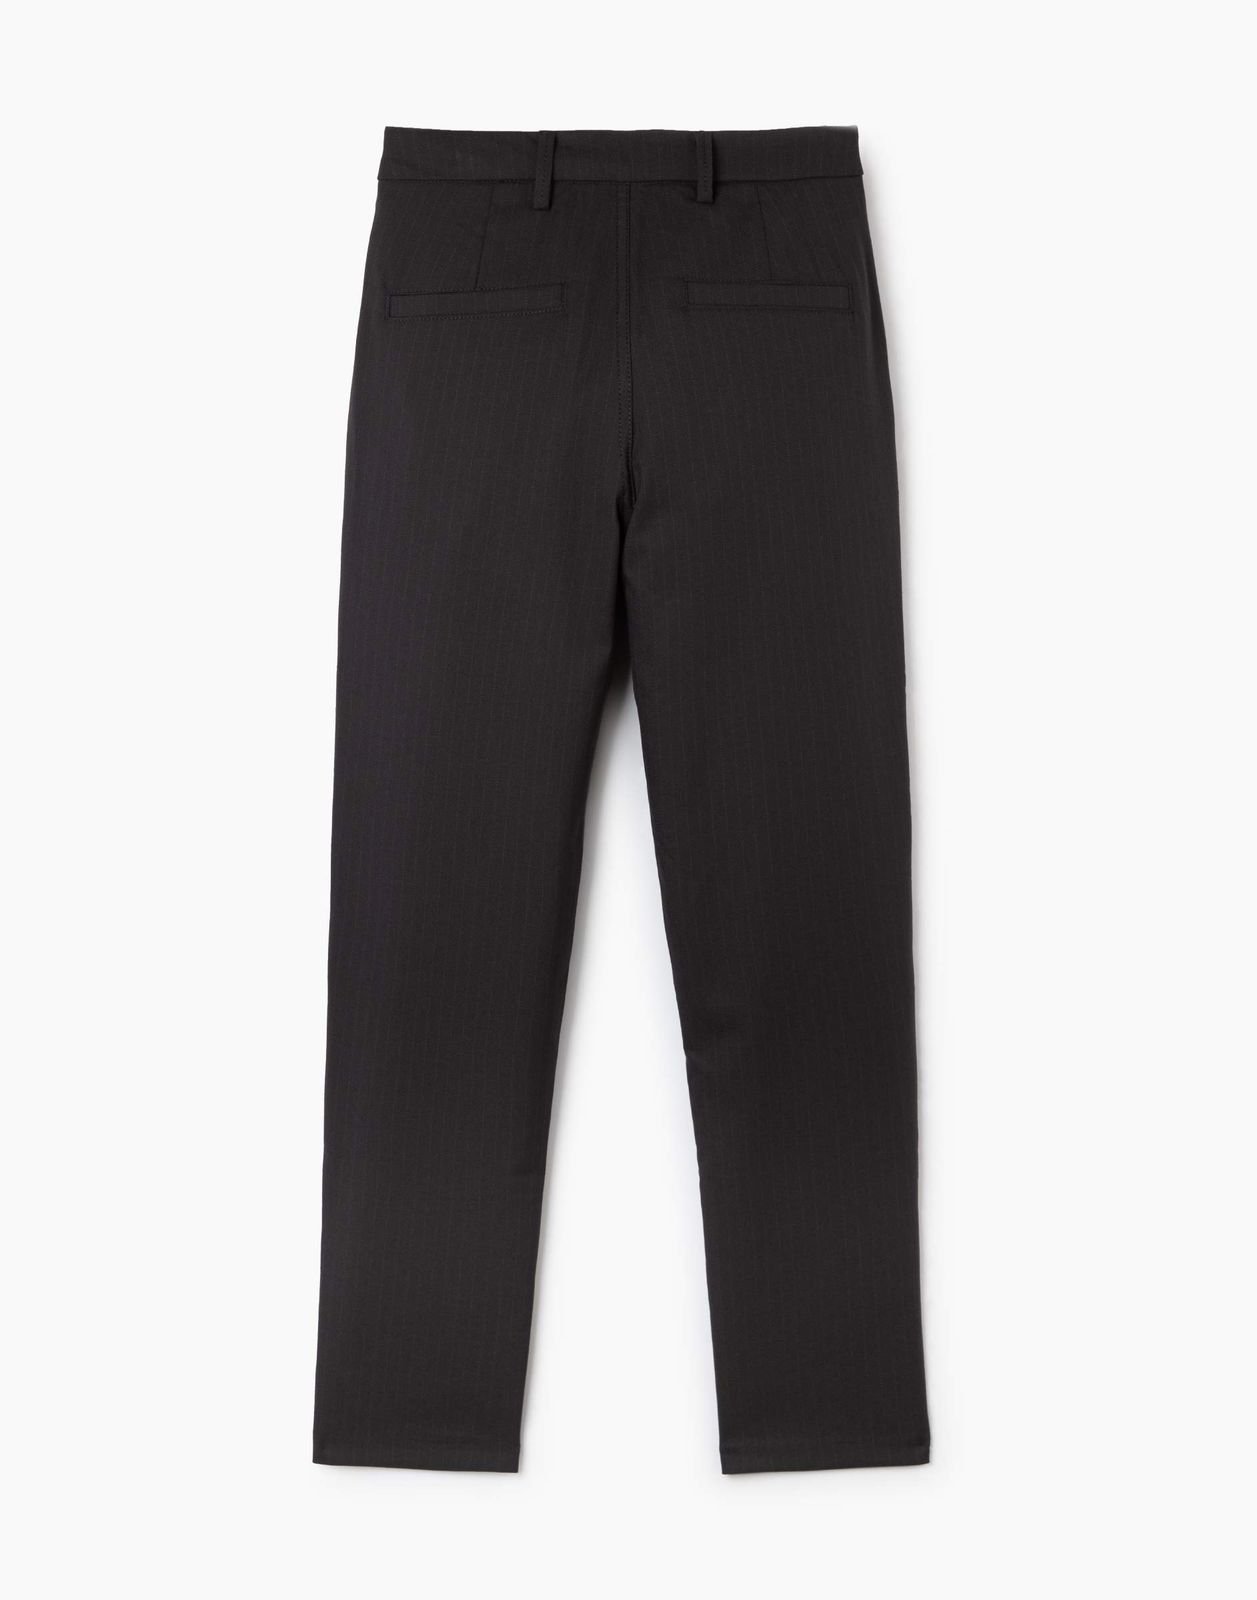 Тёмно-серые брюки Slim для мальчика BSU000240-2 купить по цене от 1799рублей с доставкой по России